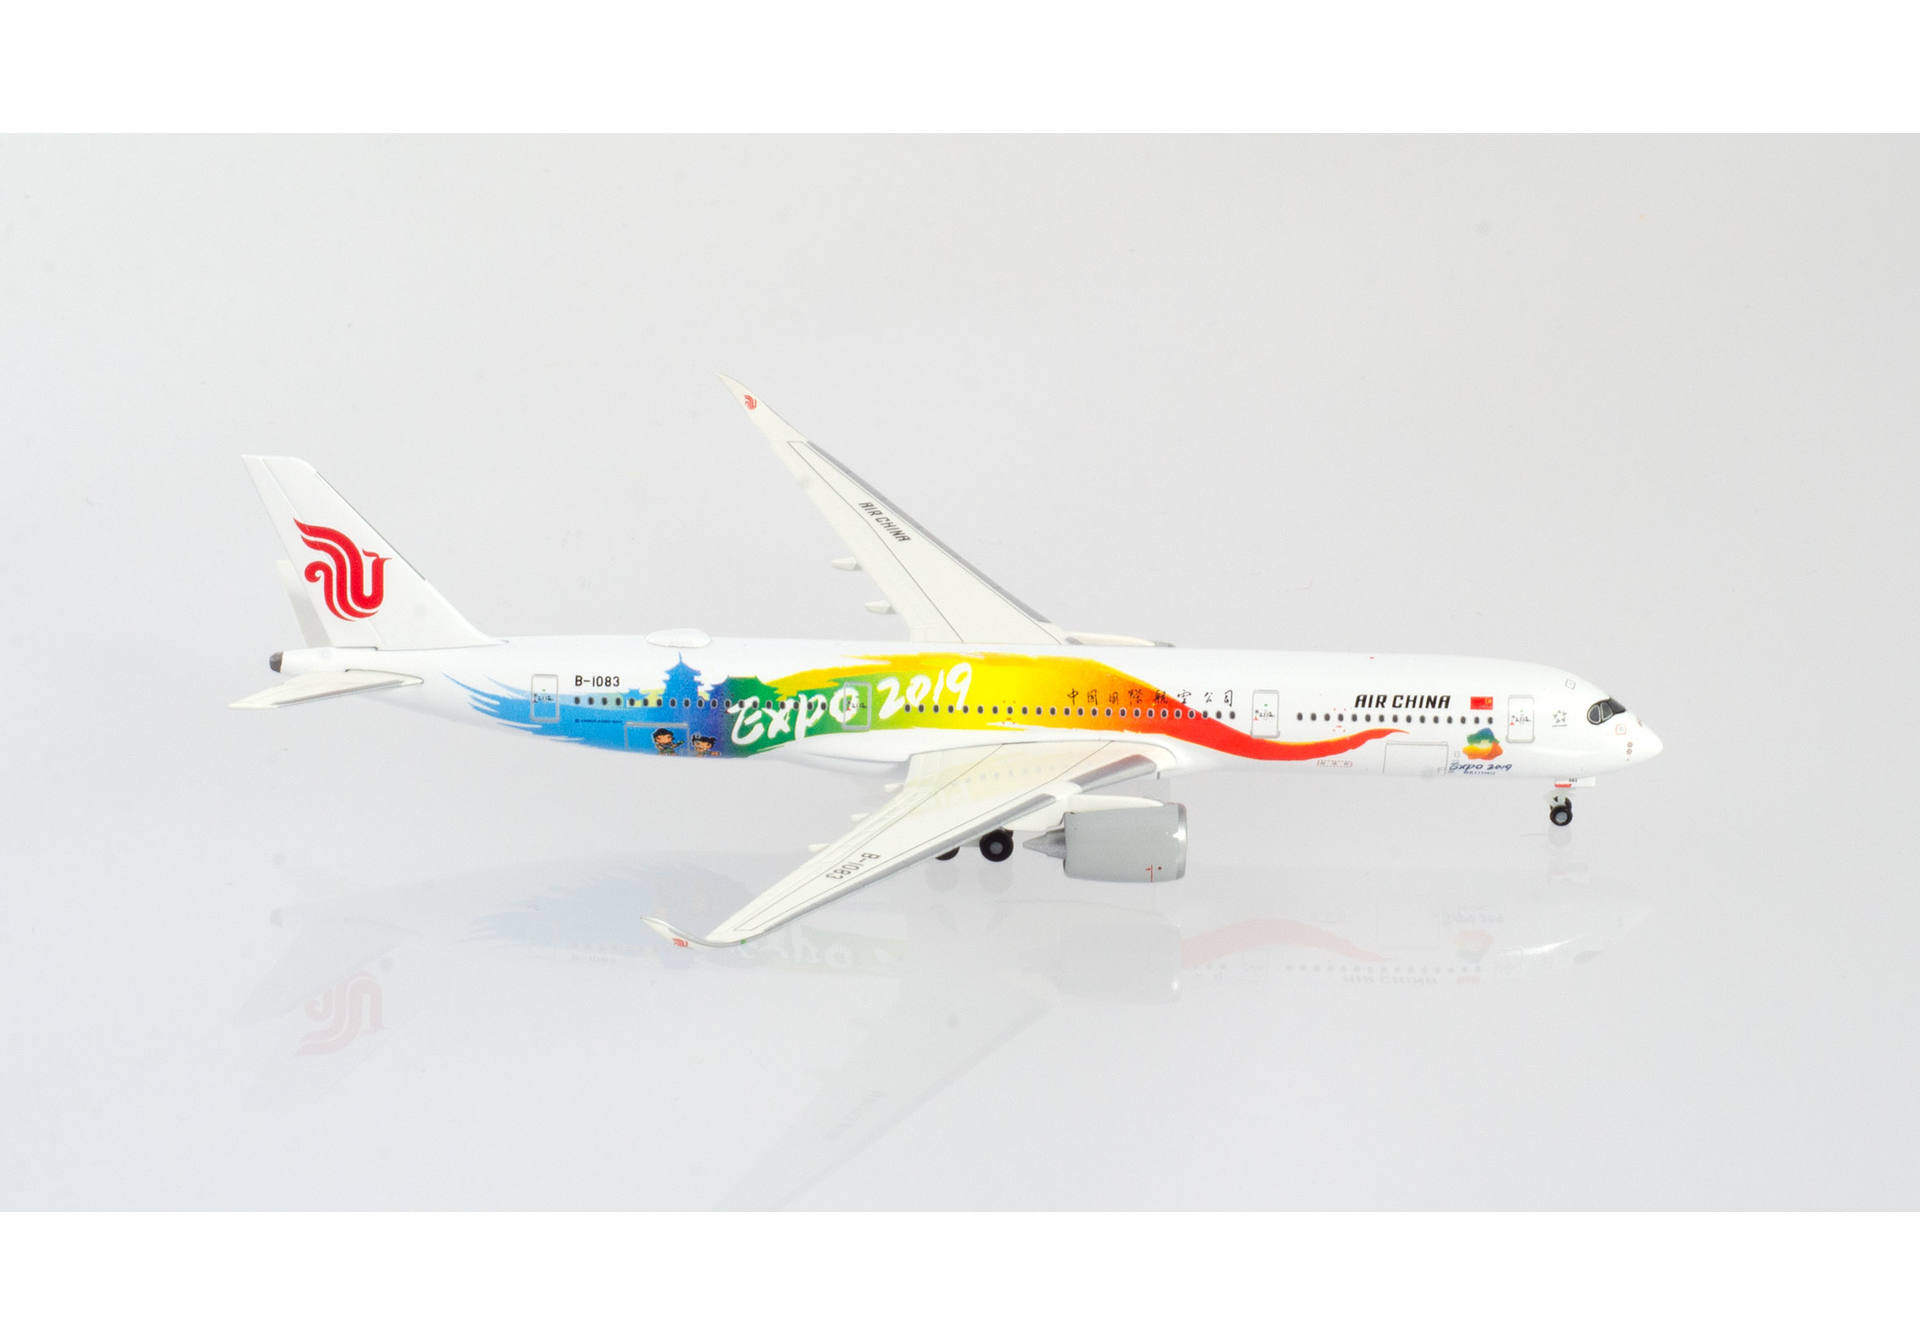 Air China Airbus A350-900 "Expo 2019"